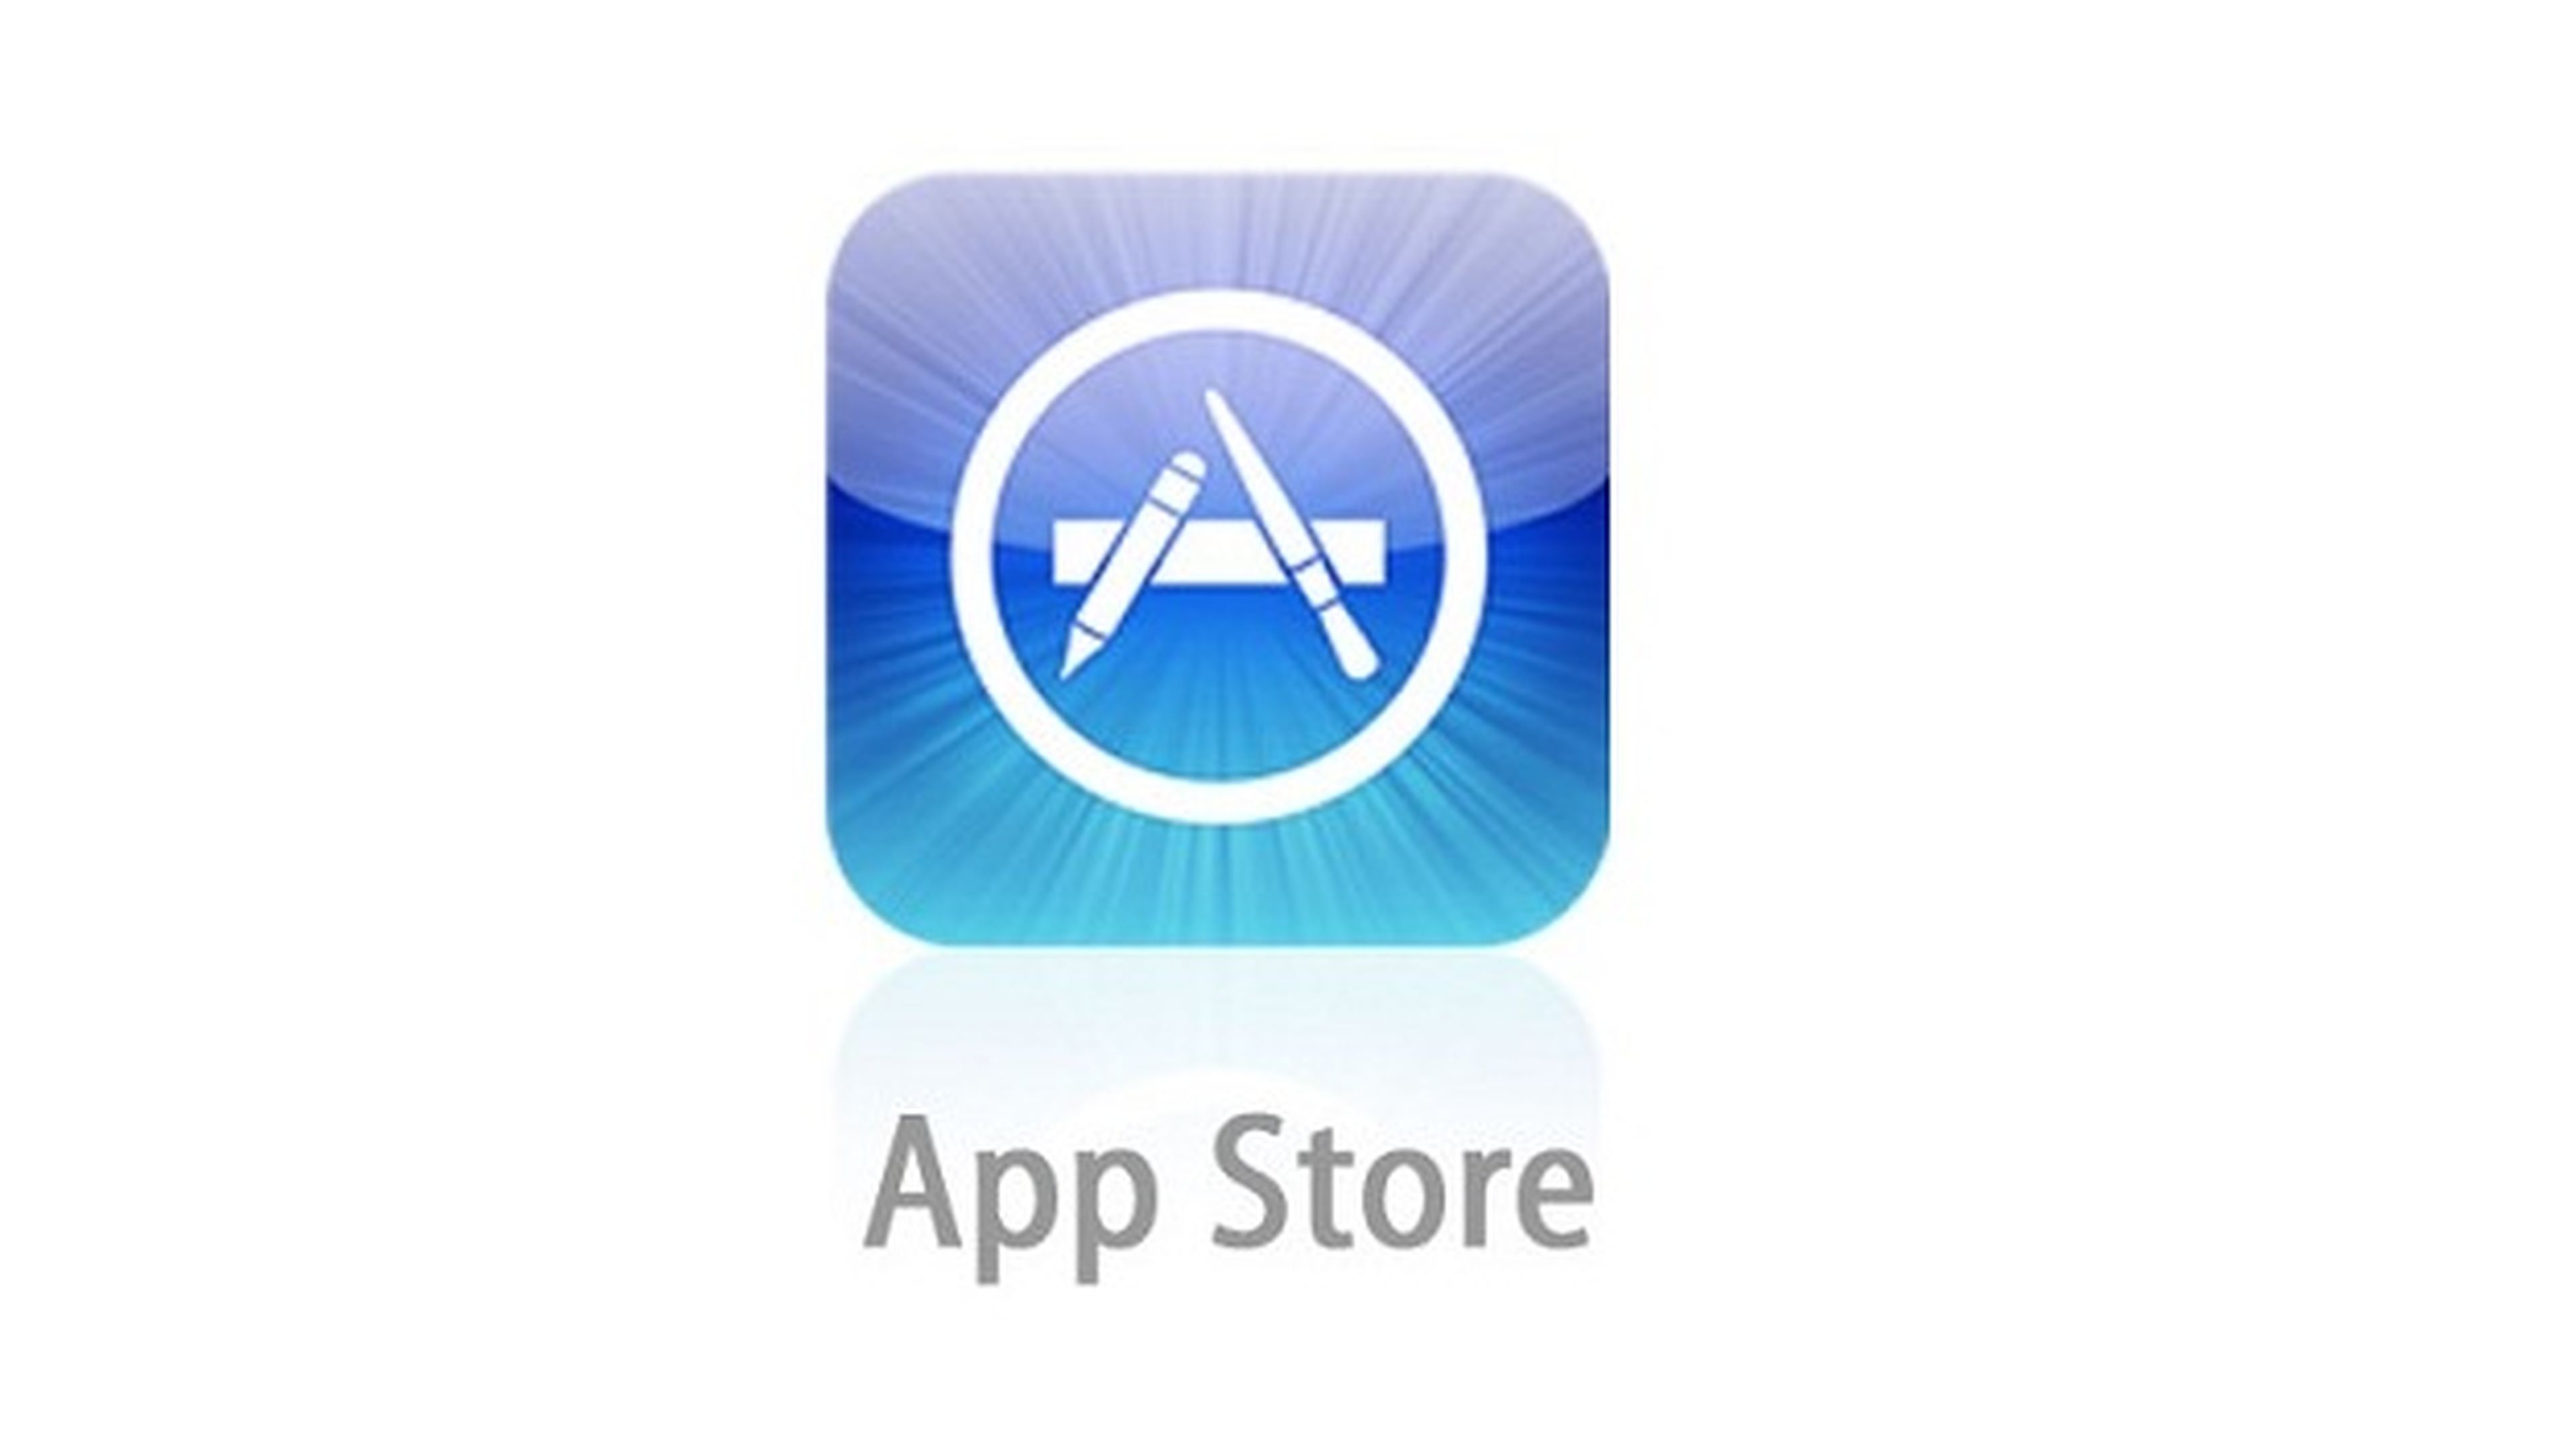 Apple ha introducido una nueva función de búsqueda sugerida en la App Store de iTunes, para iPhone con iOS 7